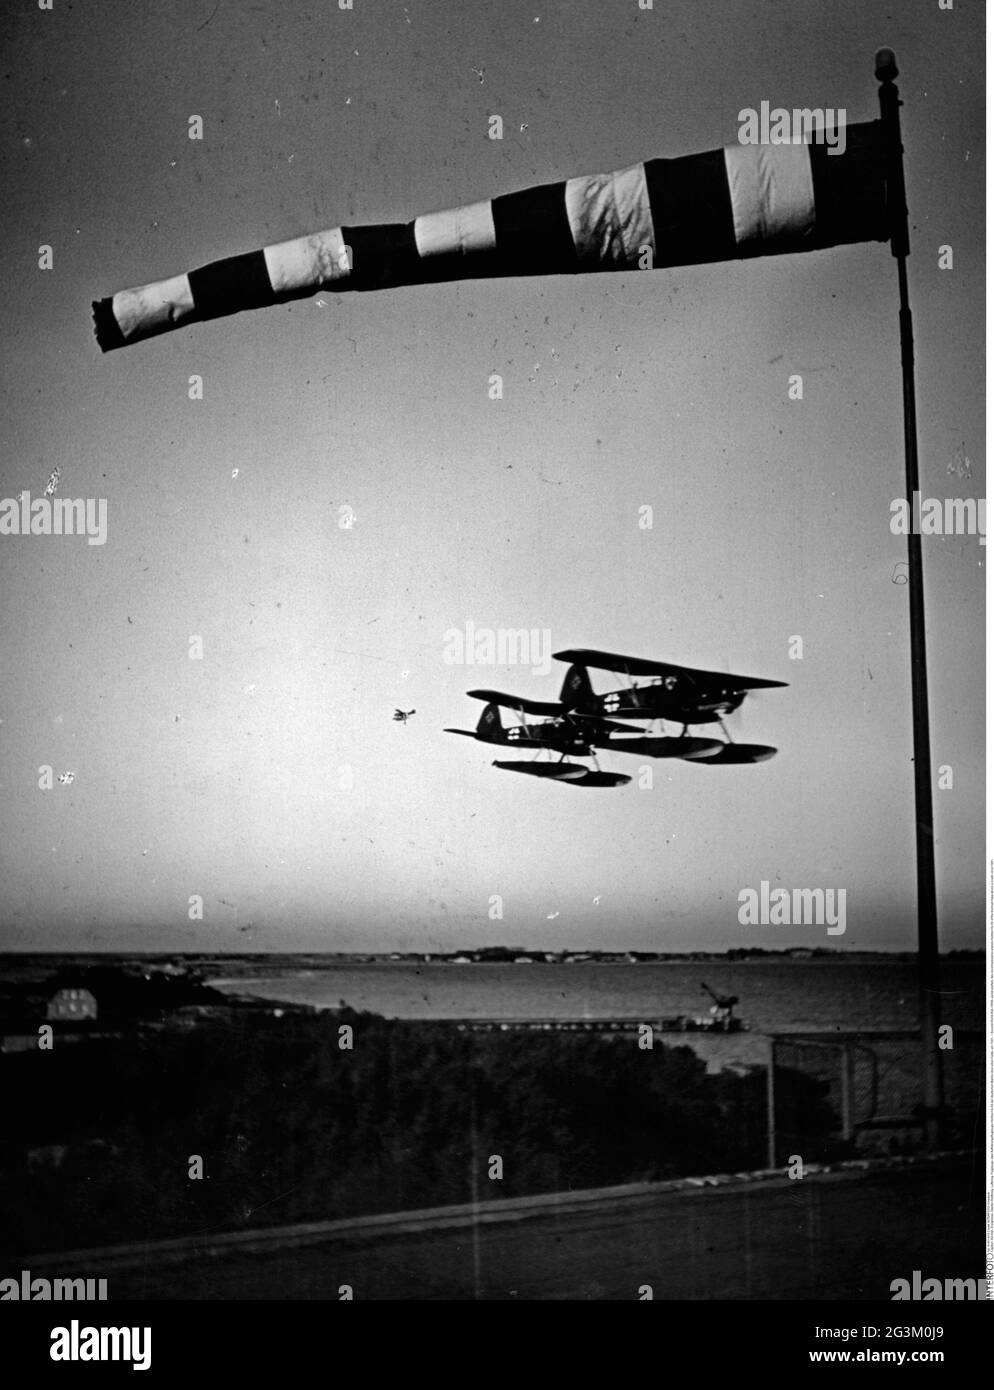 Seconda guerra mondiale / seconda guerra mondiale, guerra aerea, due aerei da ricognizione Heinkel He 60 della Marina tedesca sopra una costa, circa 1941, EDITORIALE-USO-SOLO Foto Stock